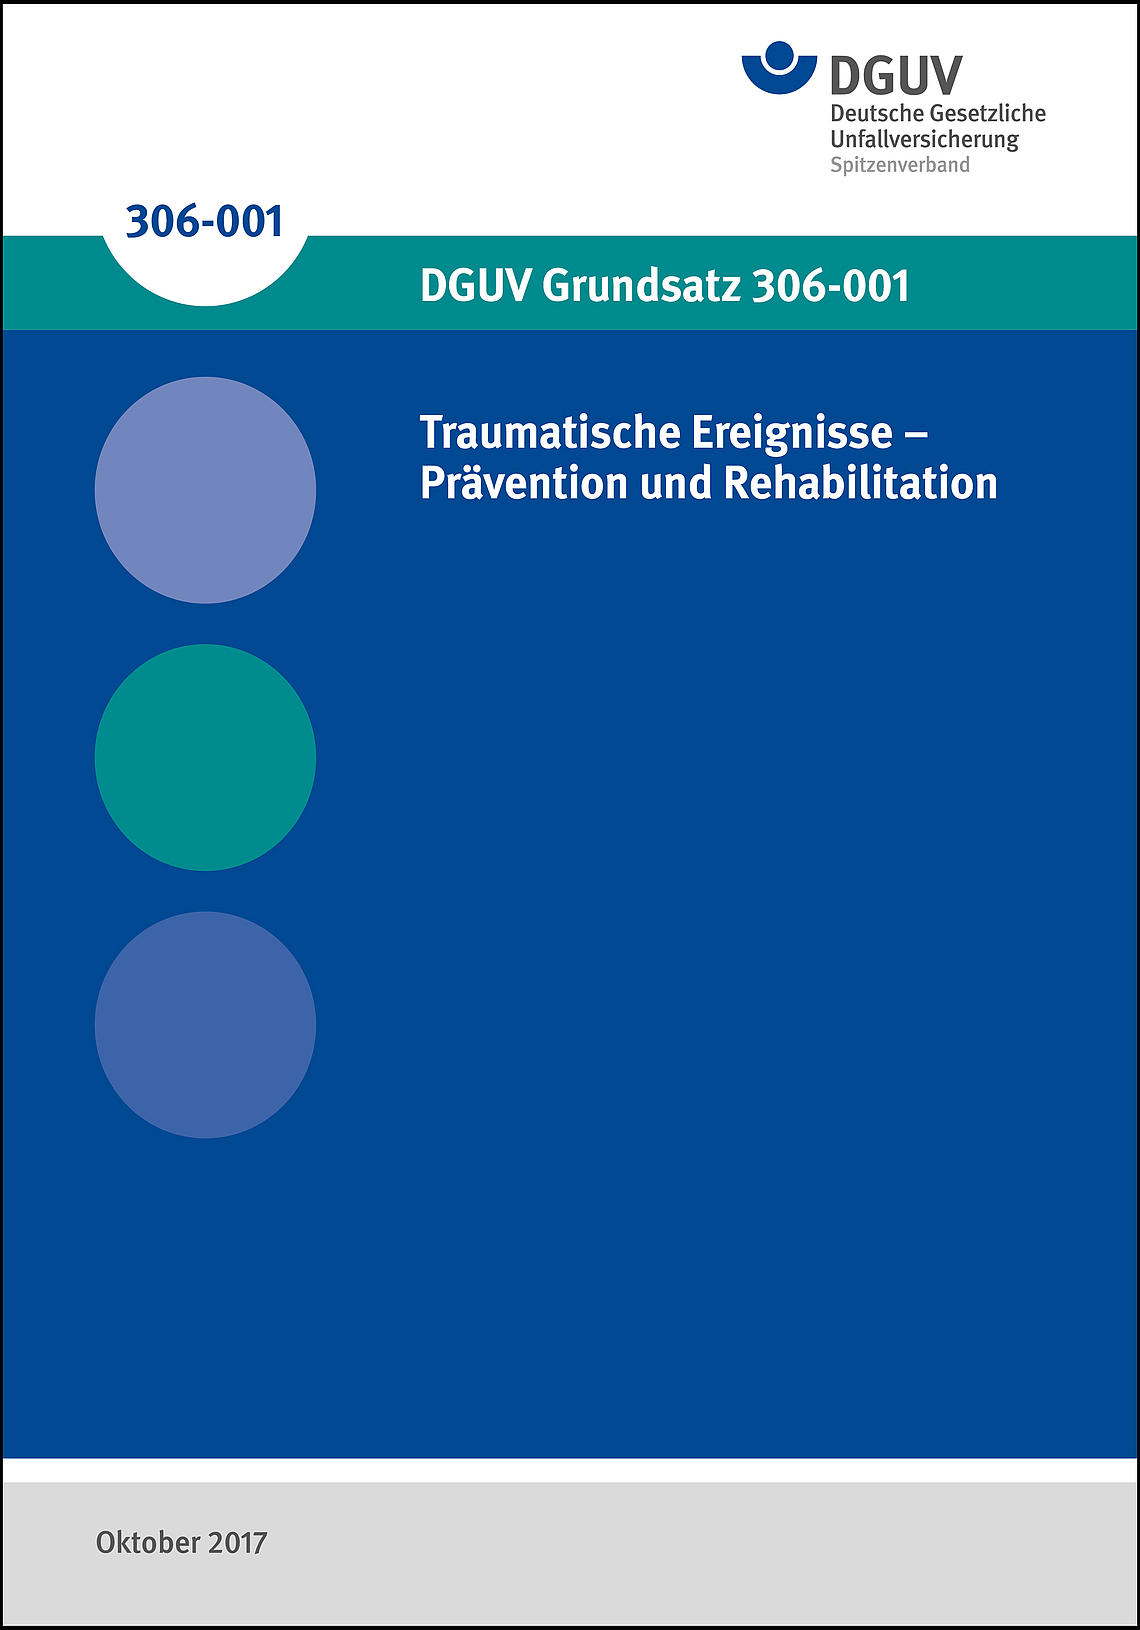 Titelbild des DGUV Grundsatz 306-001: Traumatische Ereignisse - Prävention und Rehabilitation.
